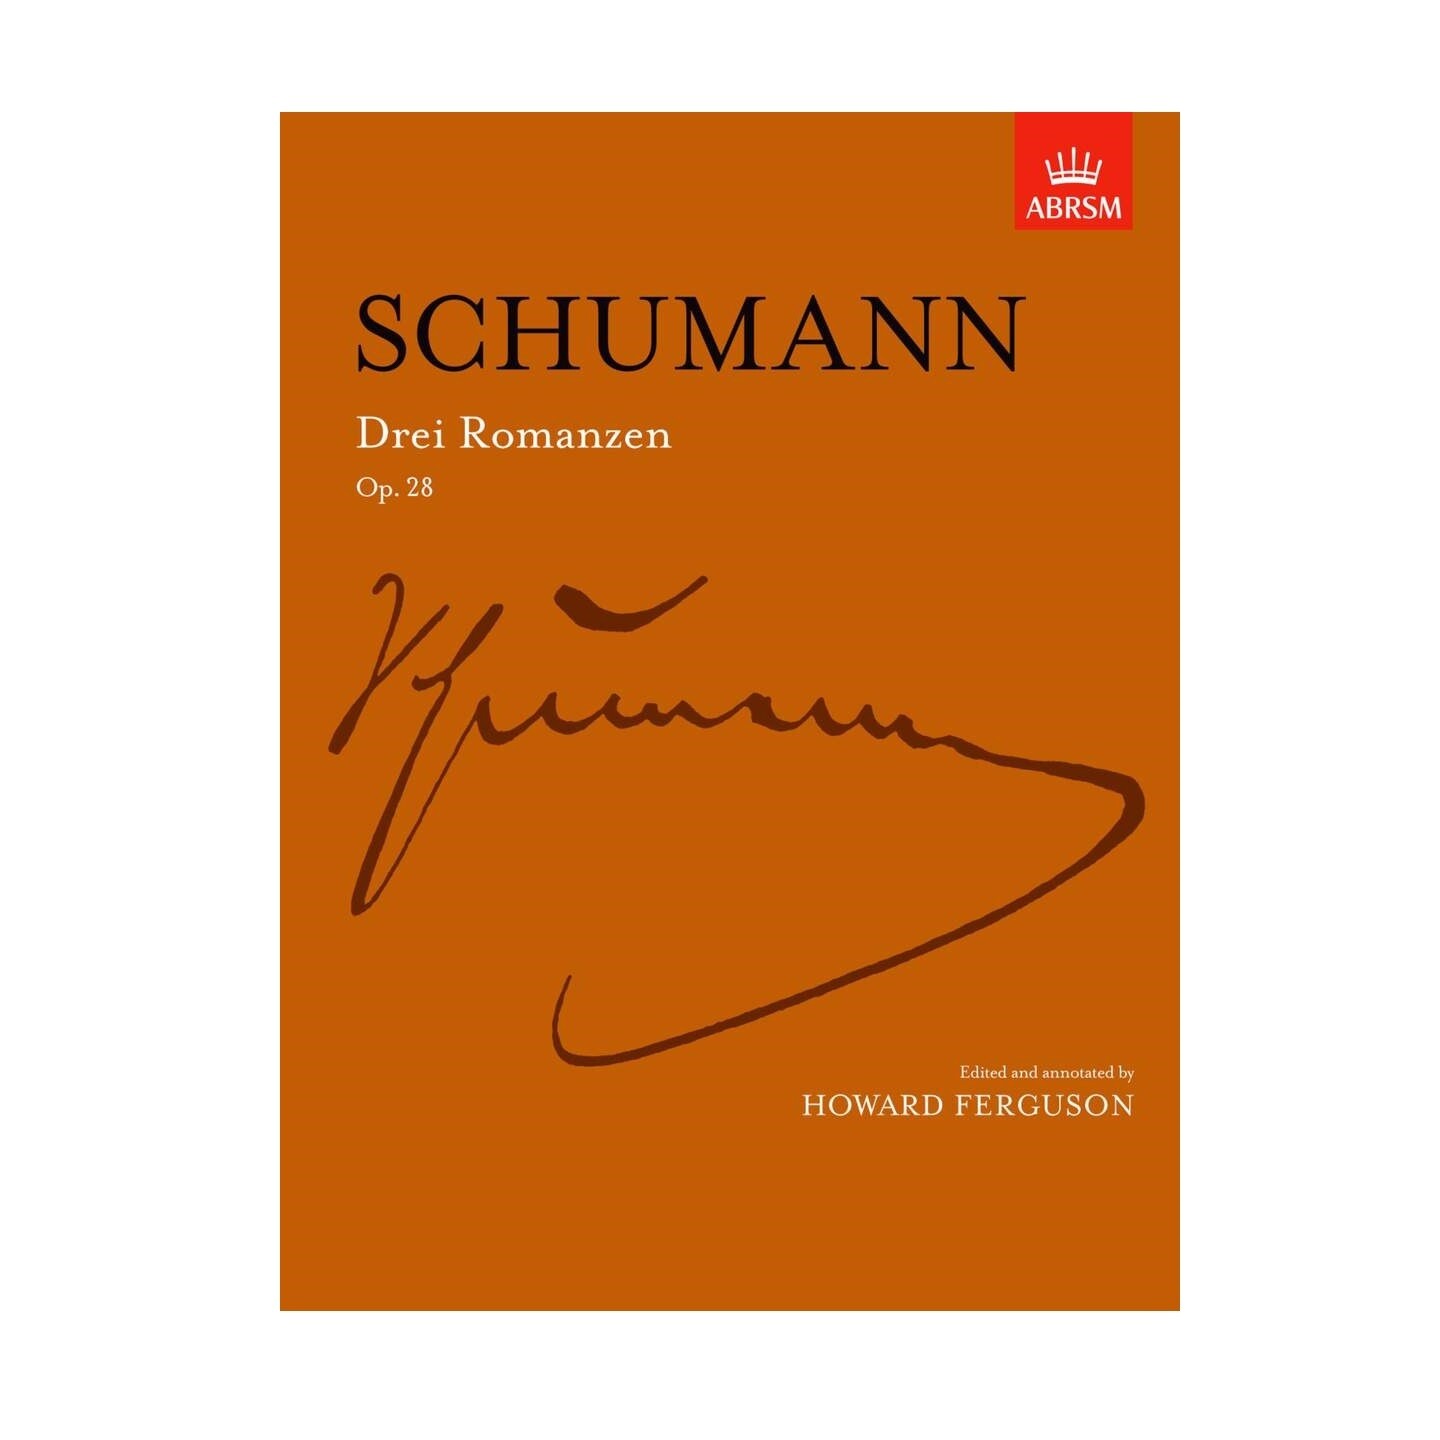 Robert Schumann: Drei Romanzen / Three Romances